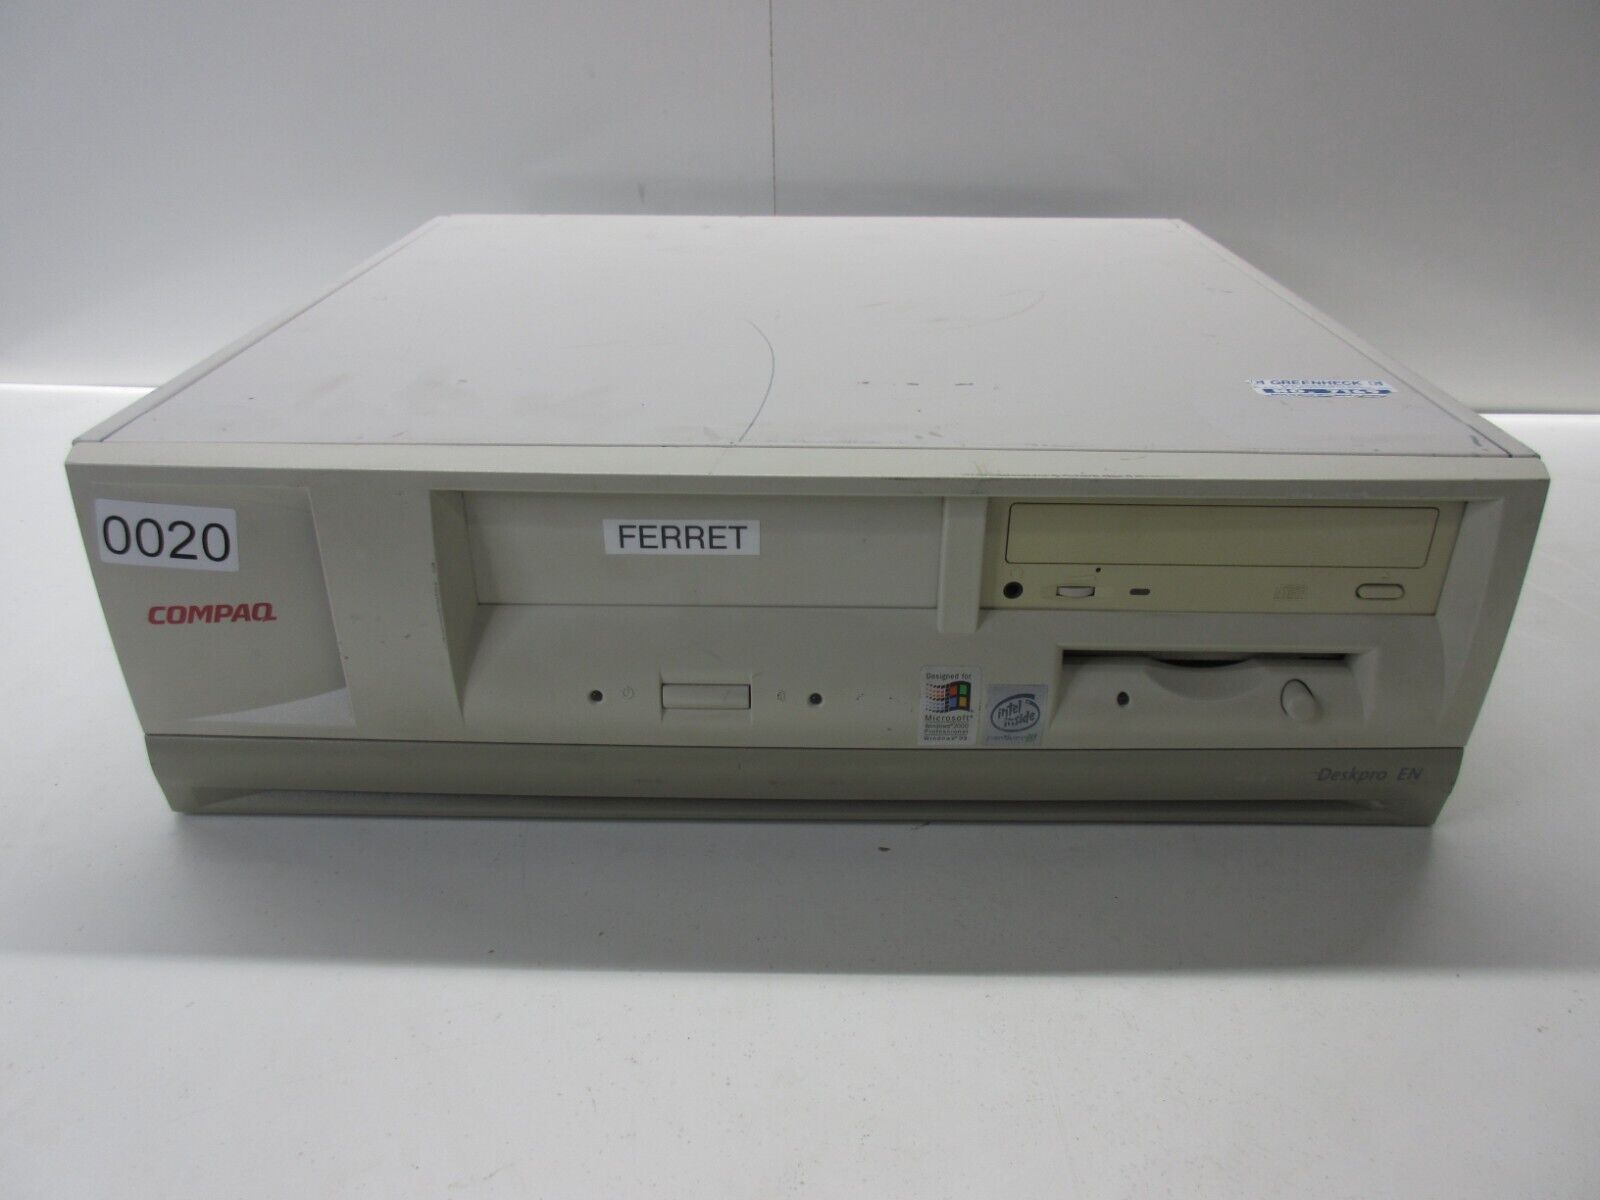 Compaq Deskpro EN SFF Intel Pentium 3 733MHz 512MB Ram No HDD